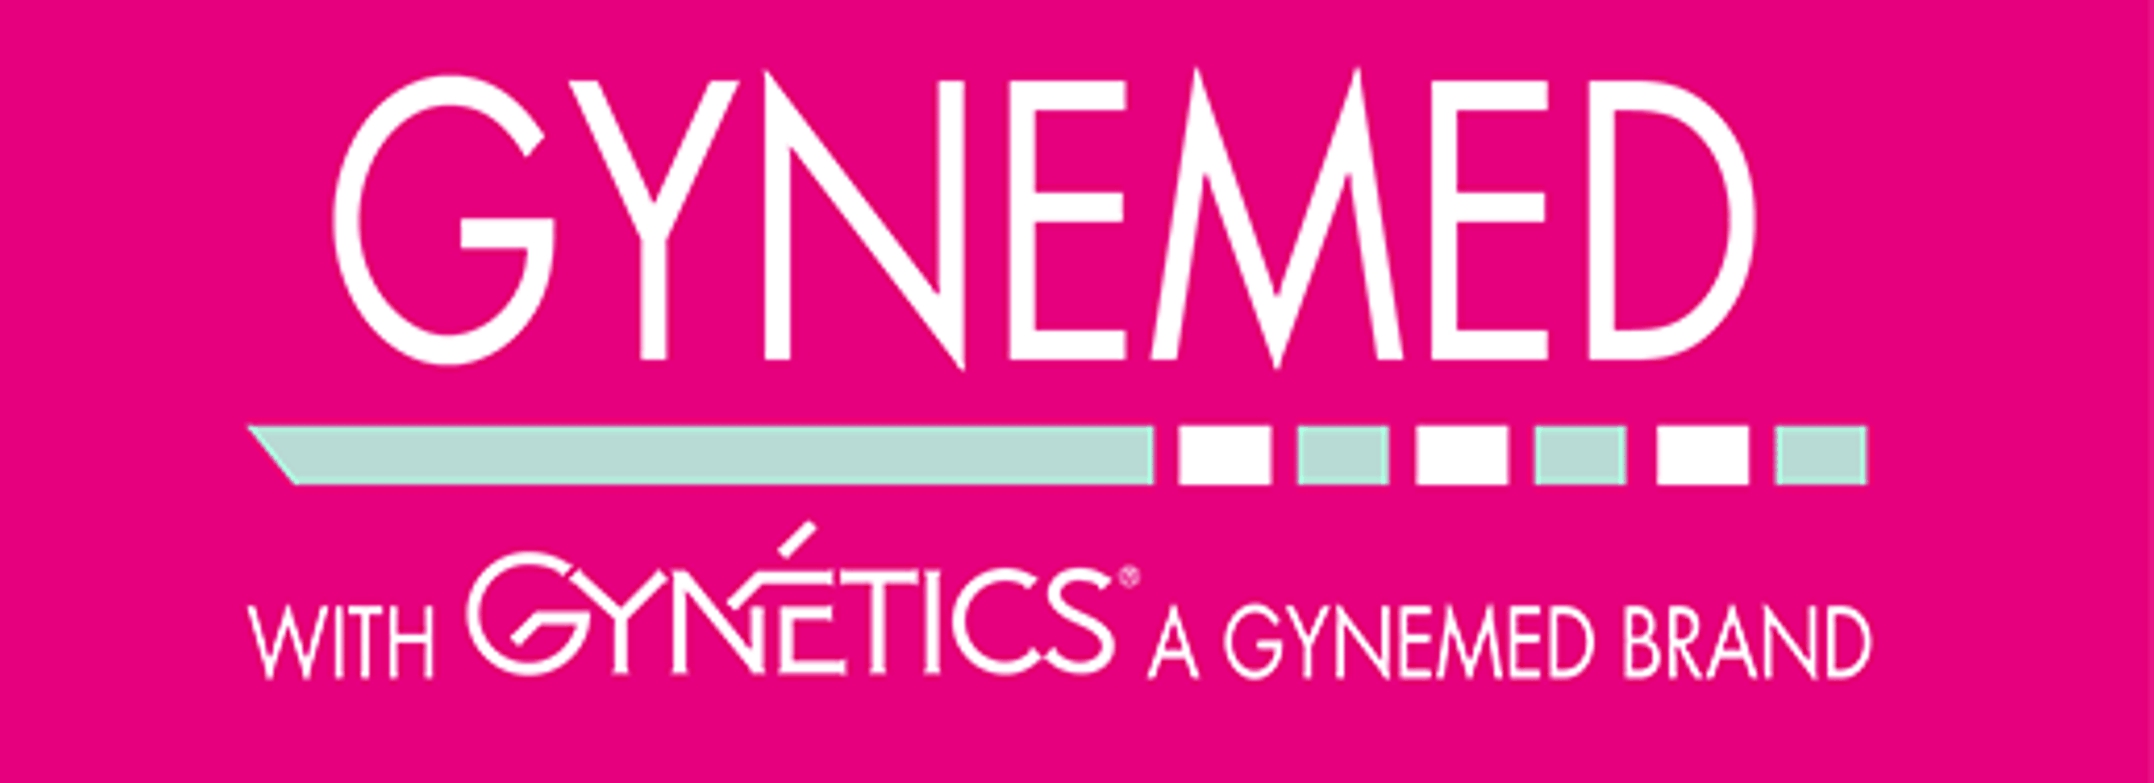 Gynemed GmbH & Co. KG